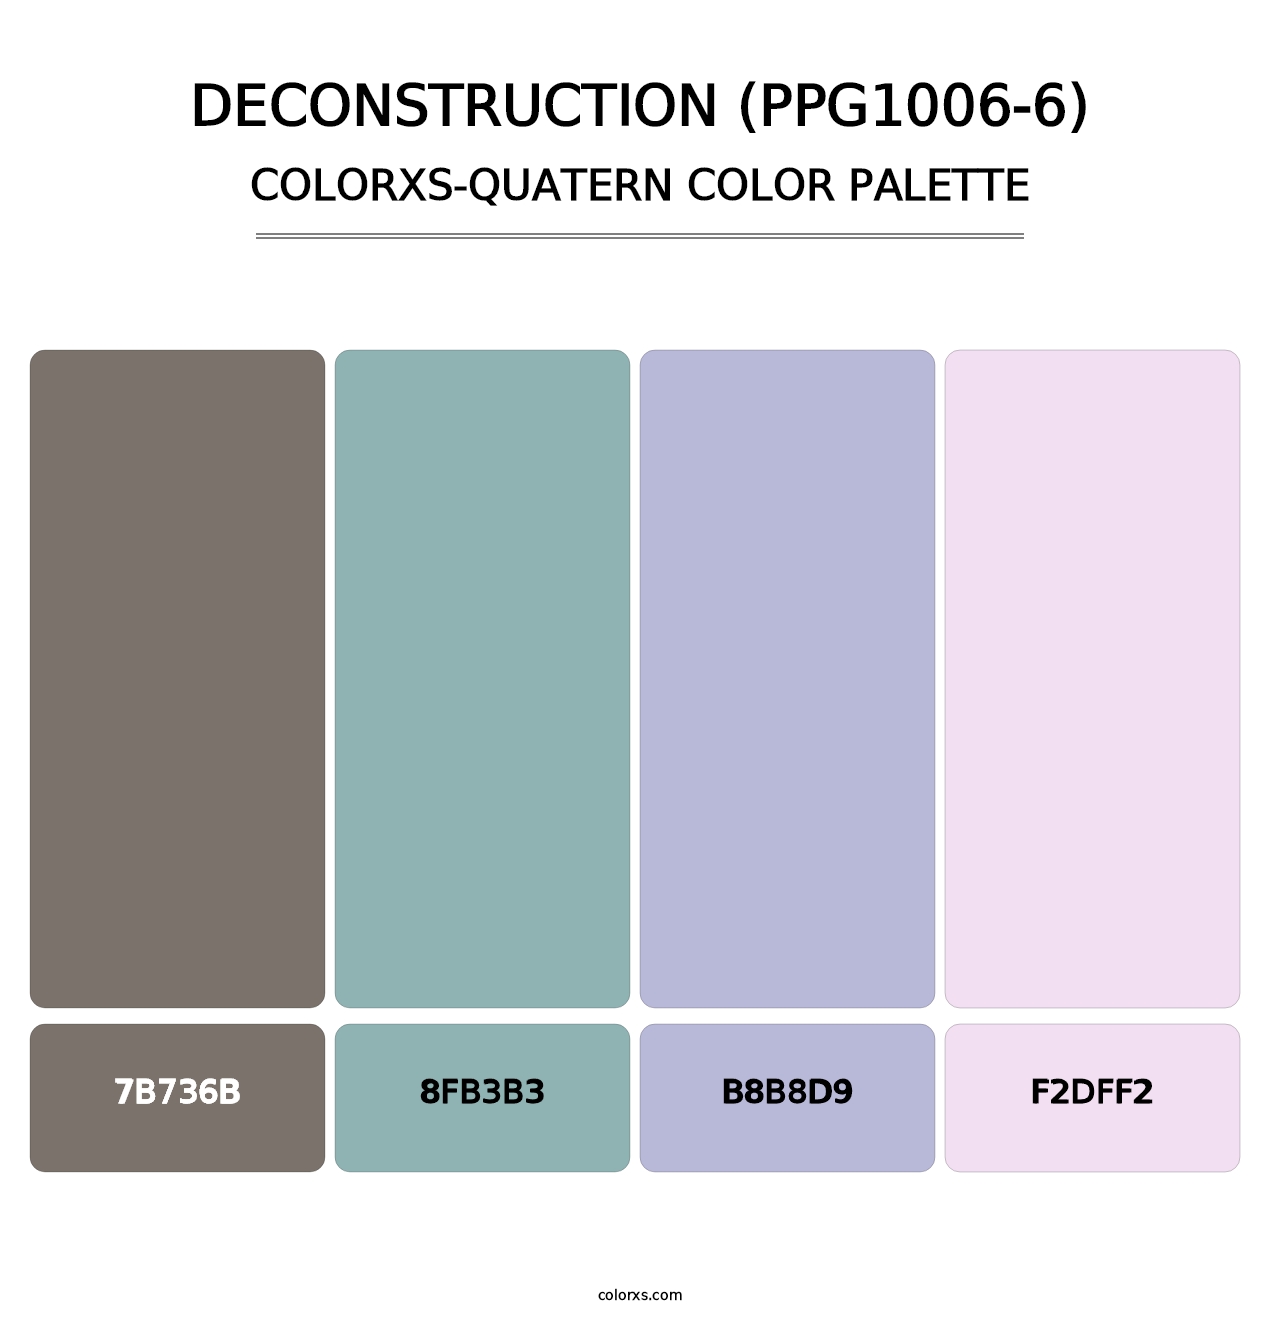 Deconstruction (PPG1006-6) - Colorxs Quatern Palette